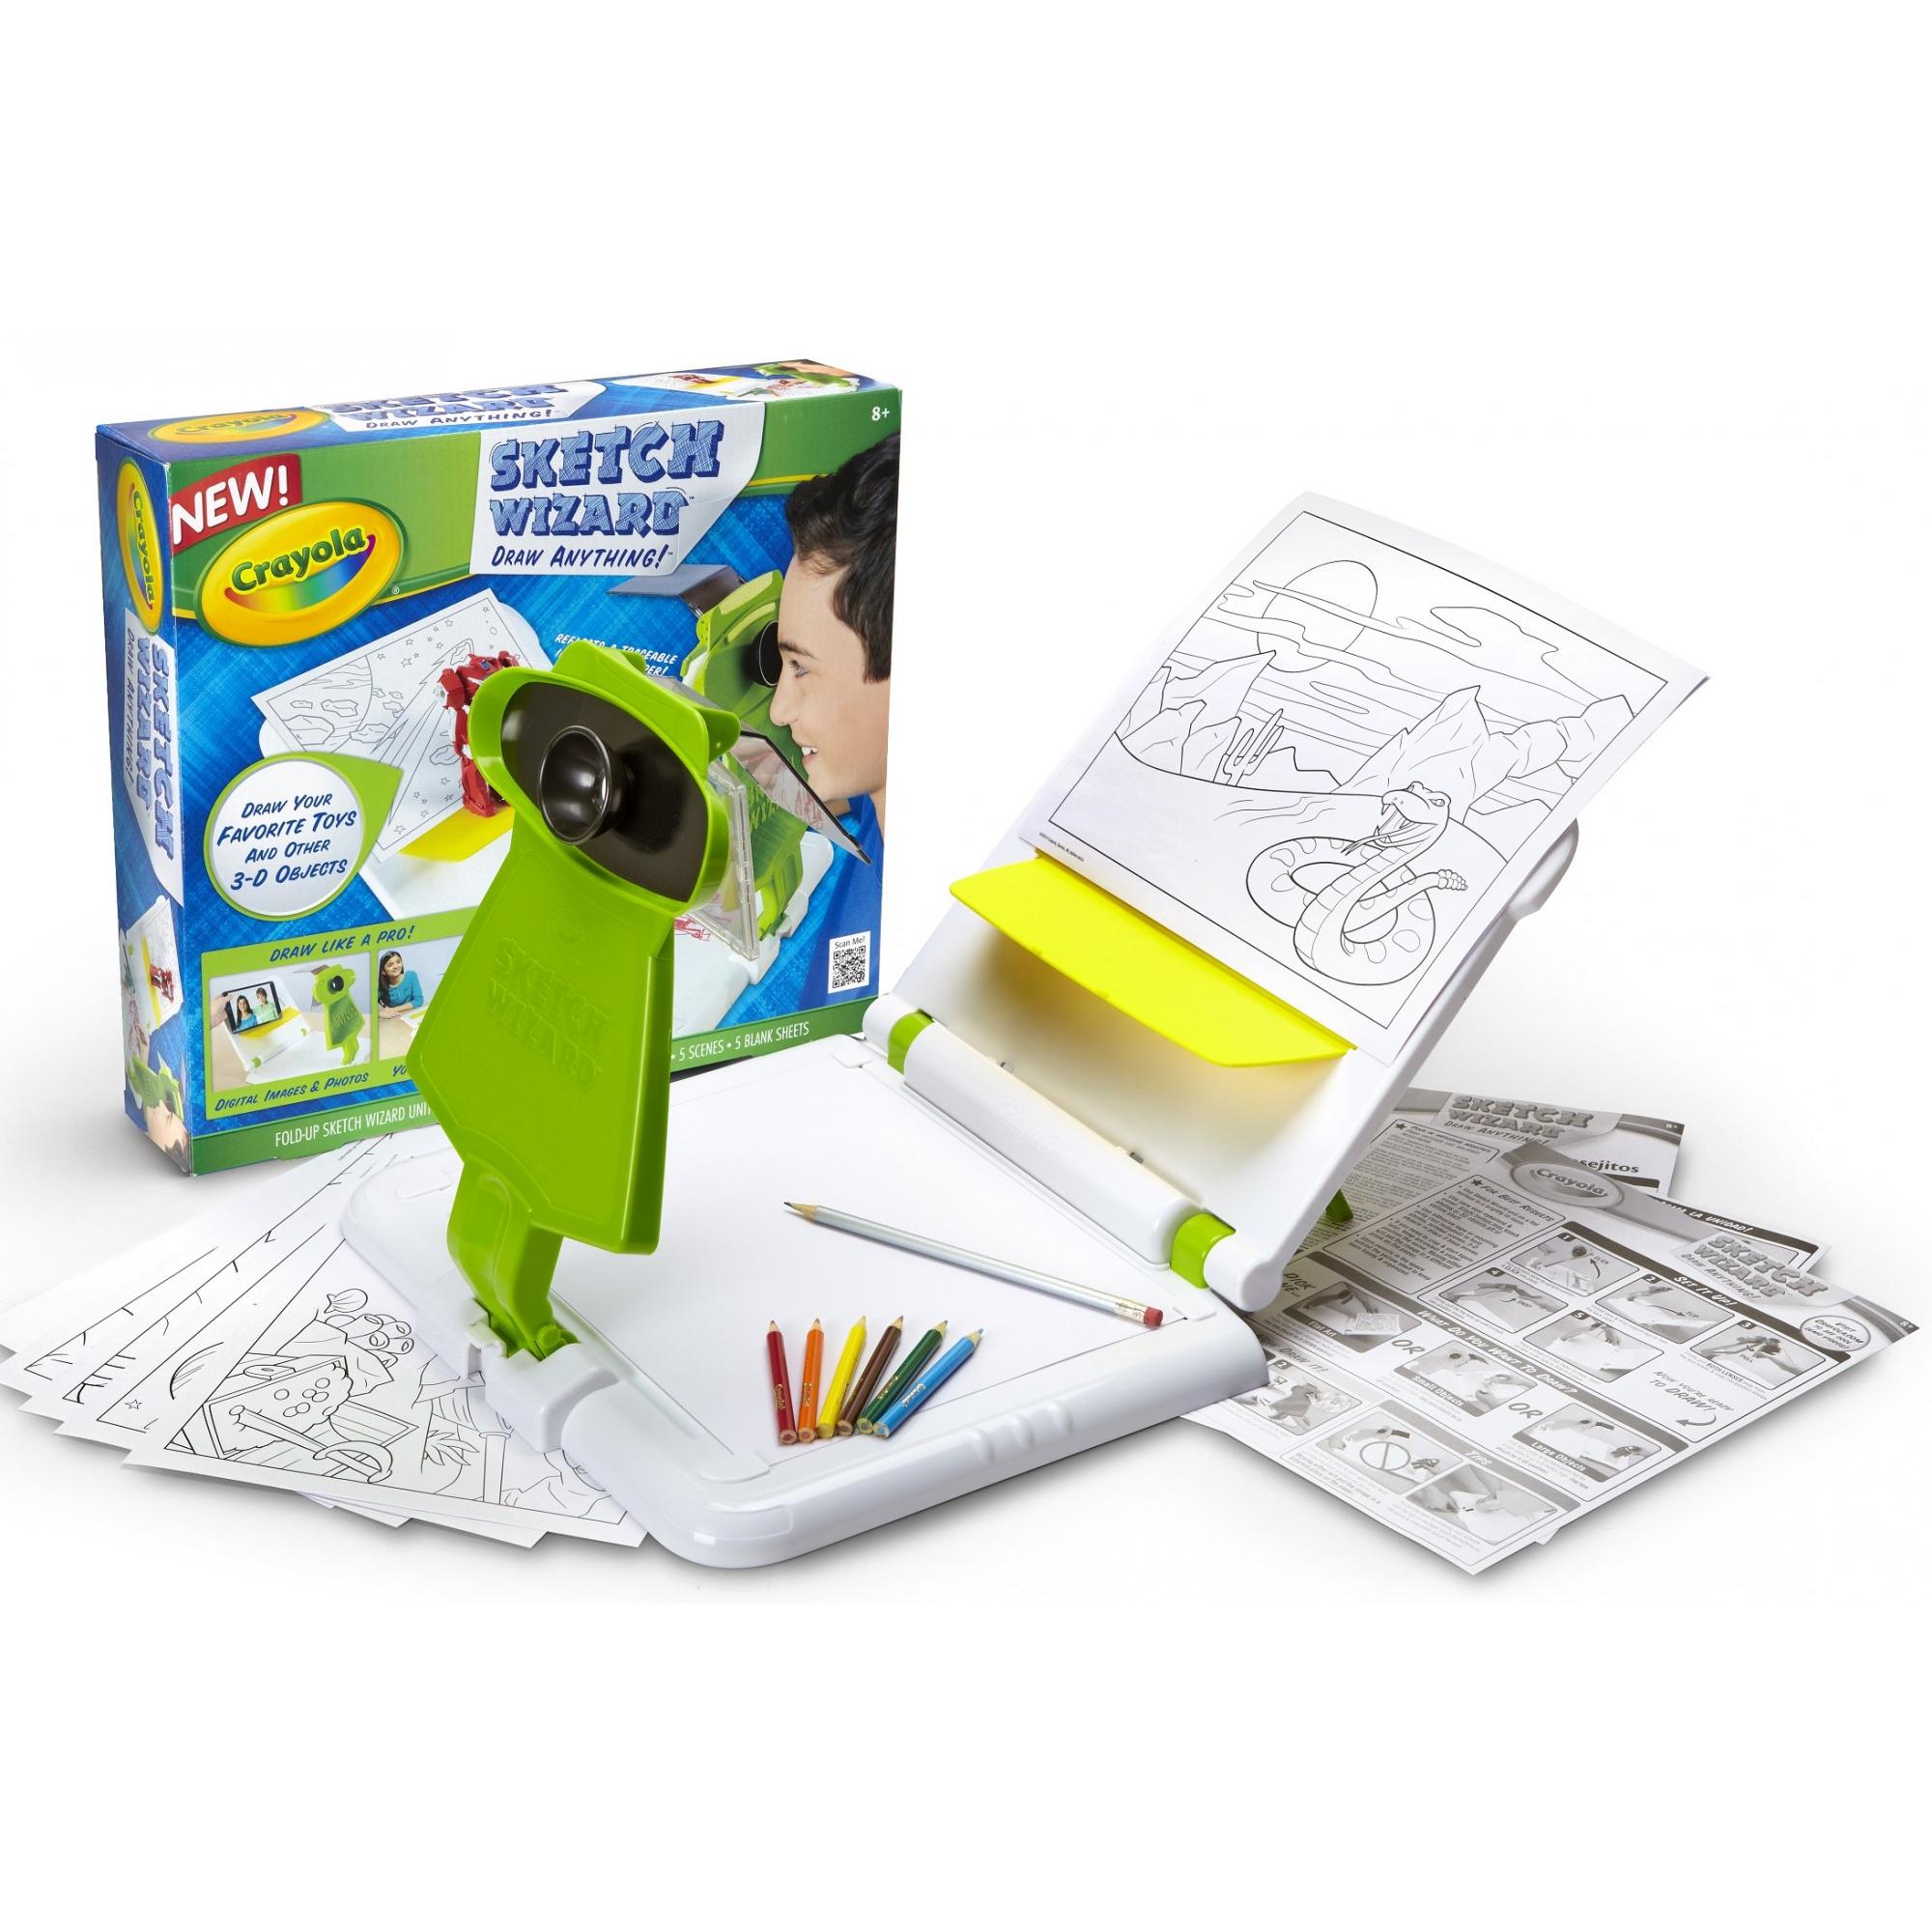 Crayola Sketch Wizard Kit, Art Kit, Gift for Boys & Girls - image 3 of 4